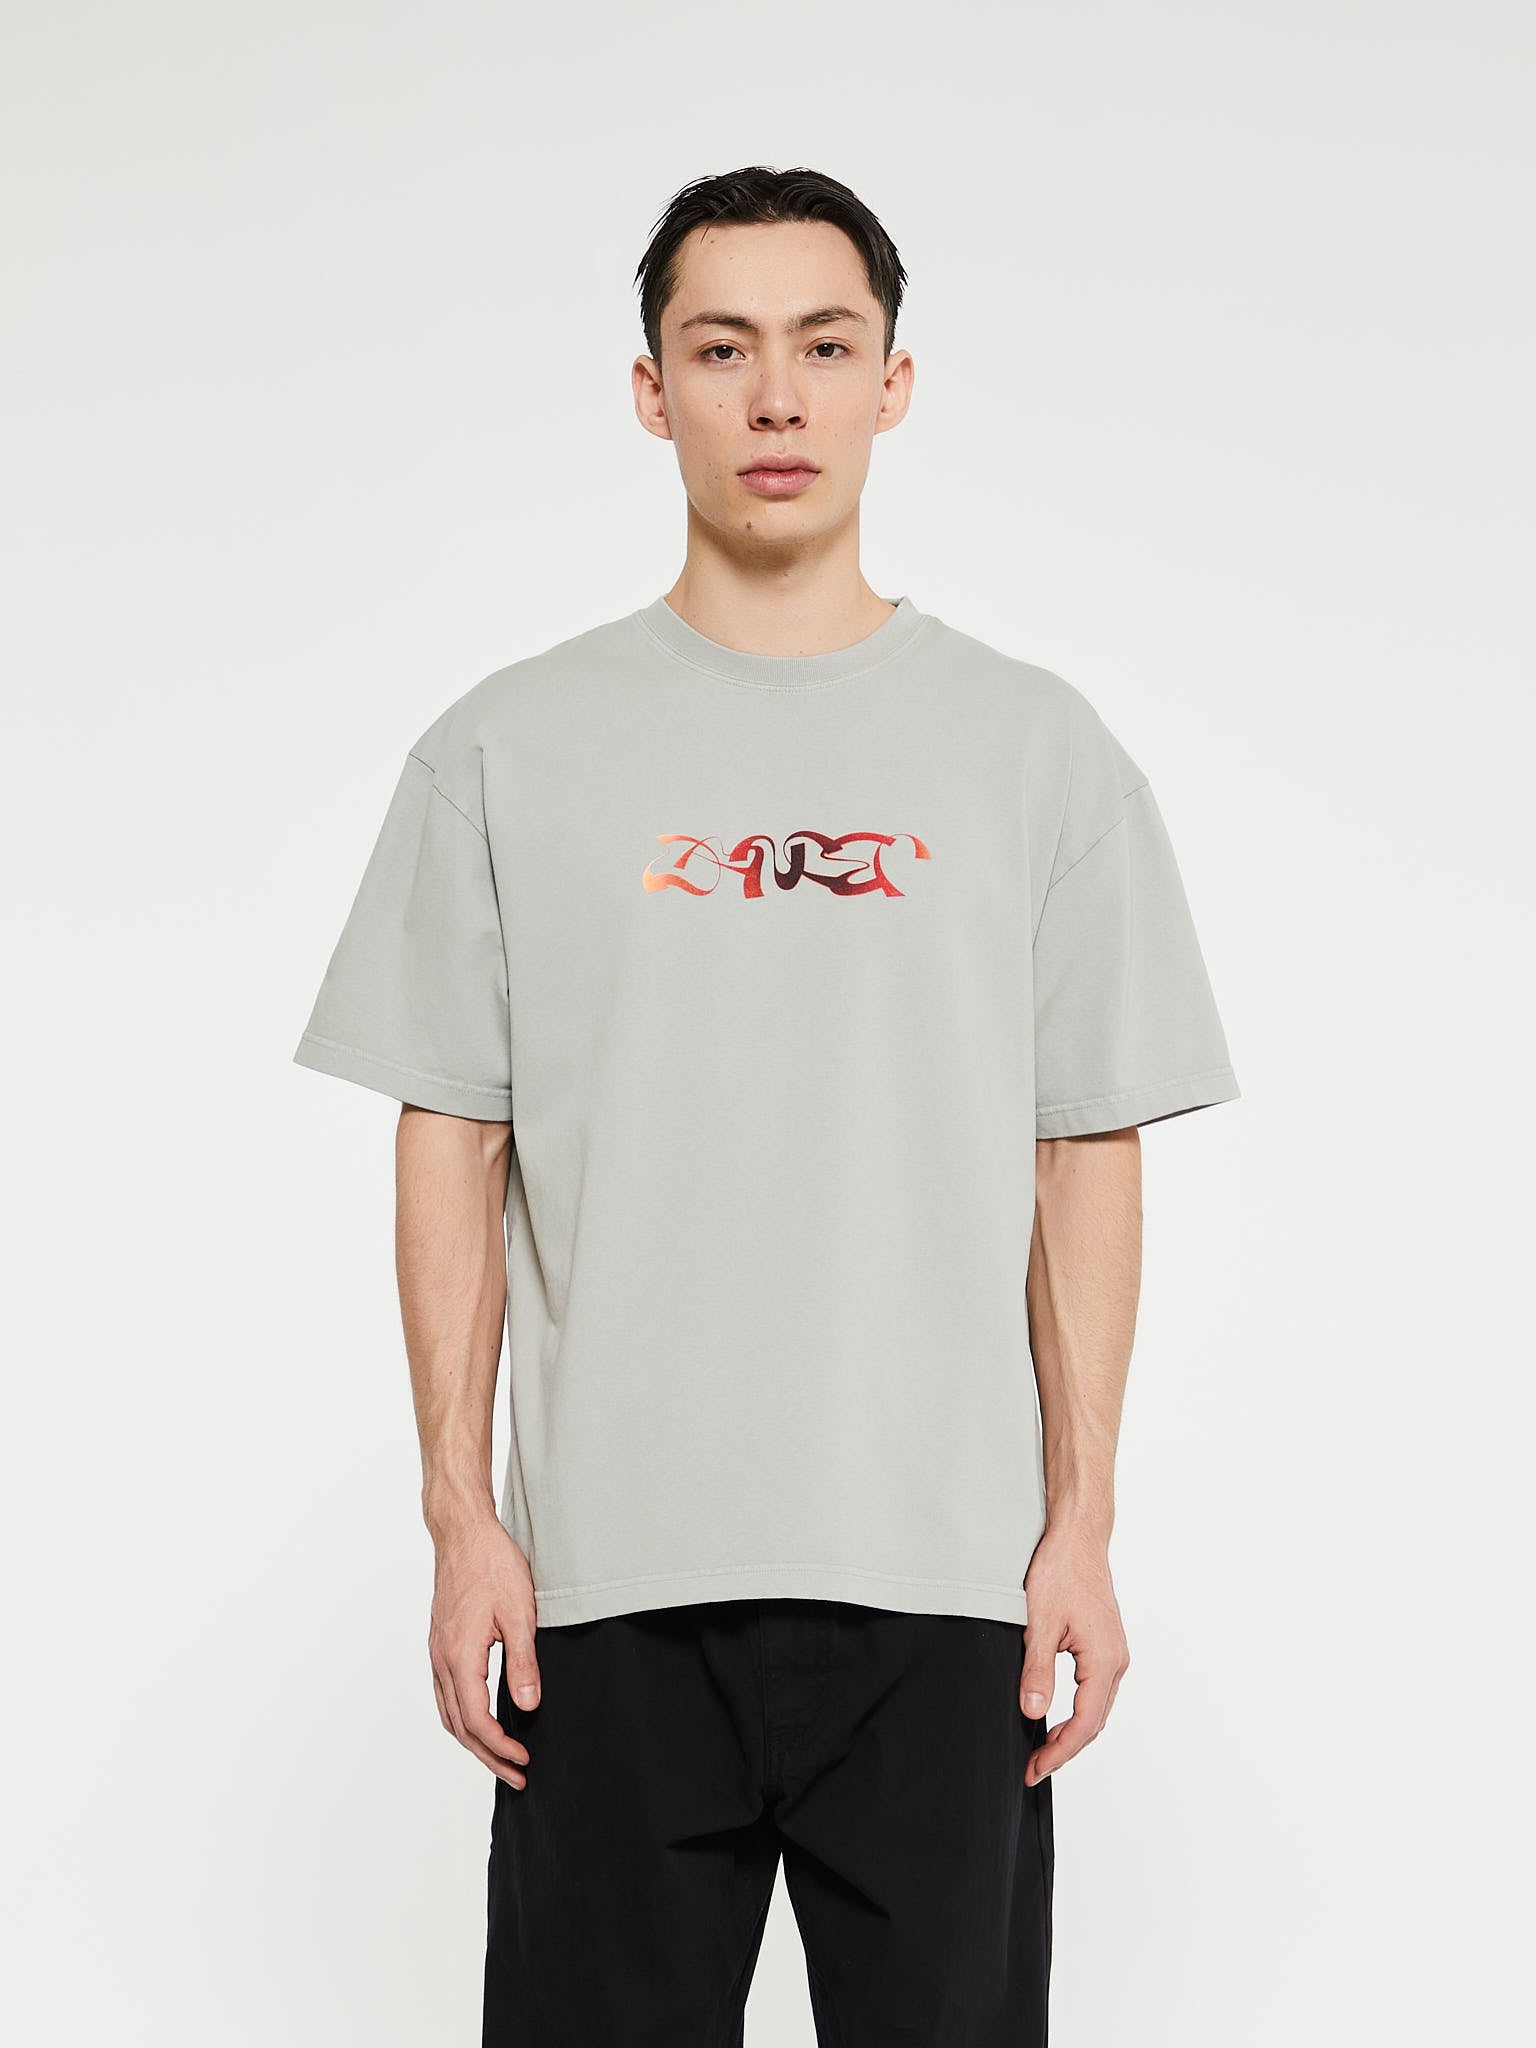 Dancer - Analog Triple Logo T-Shirt in Grey